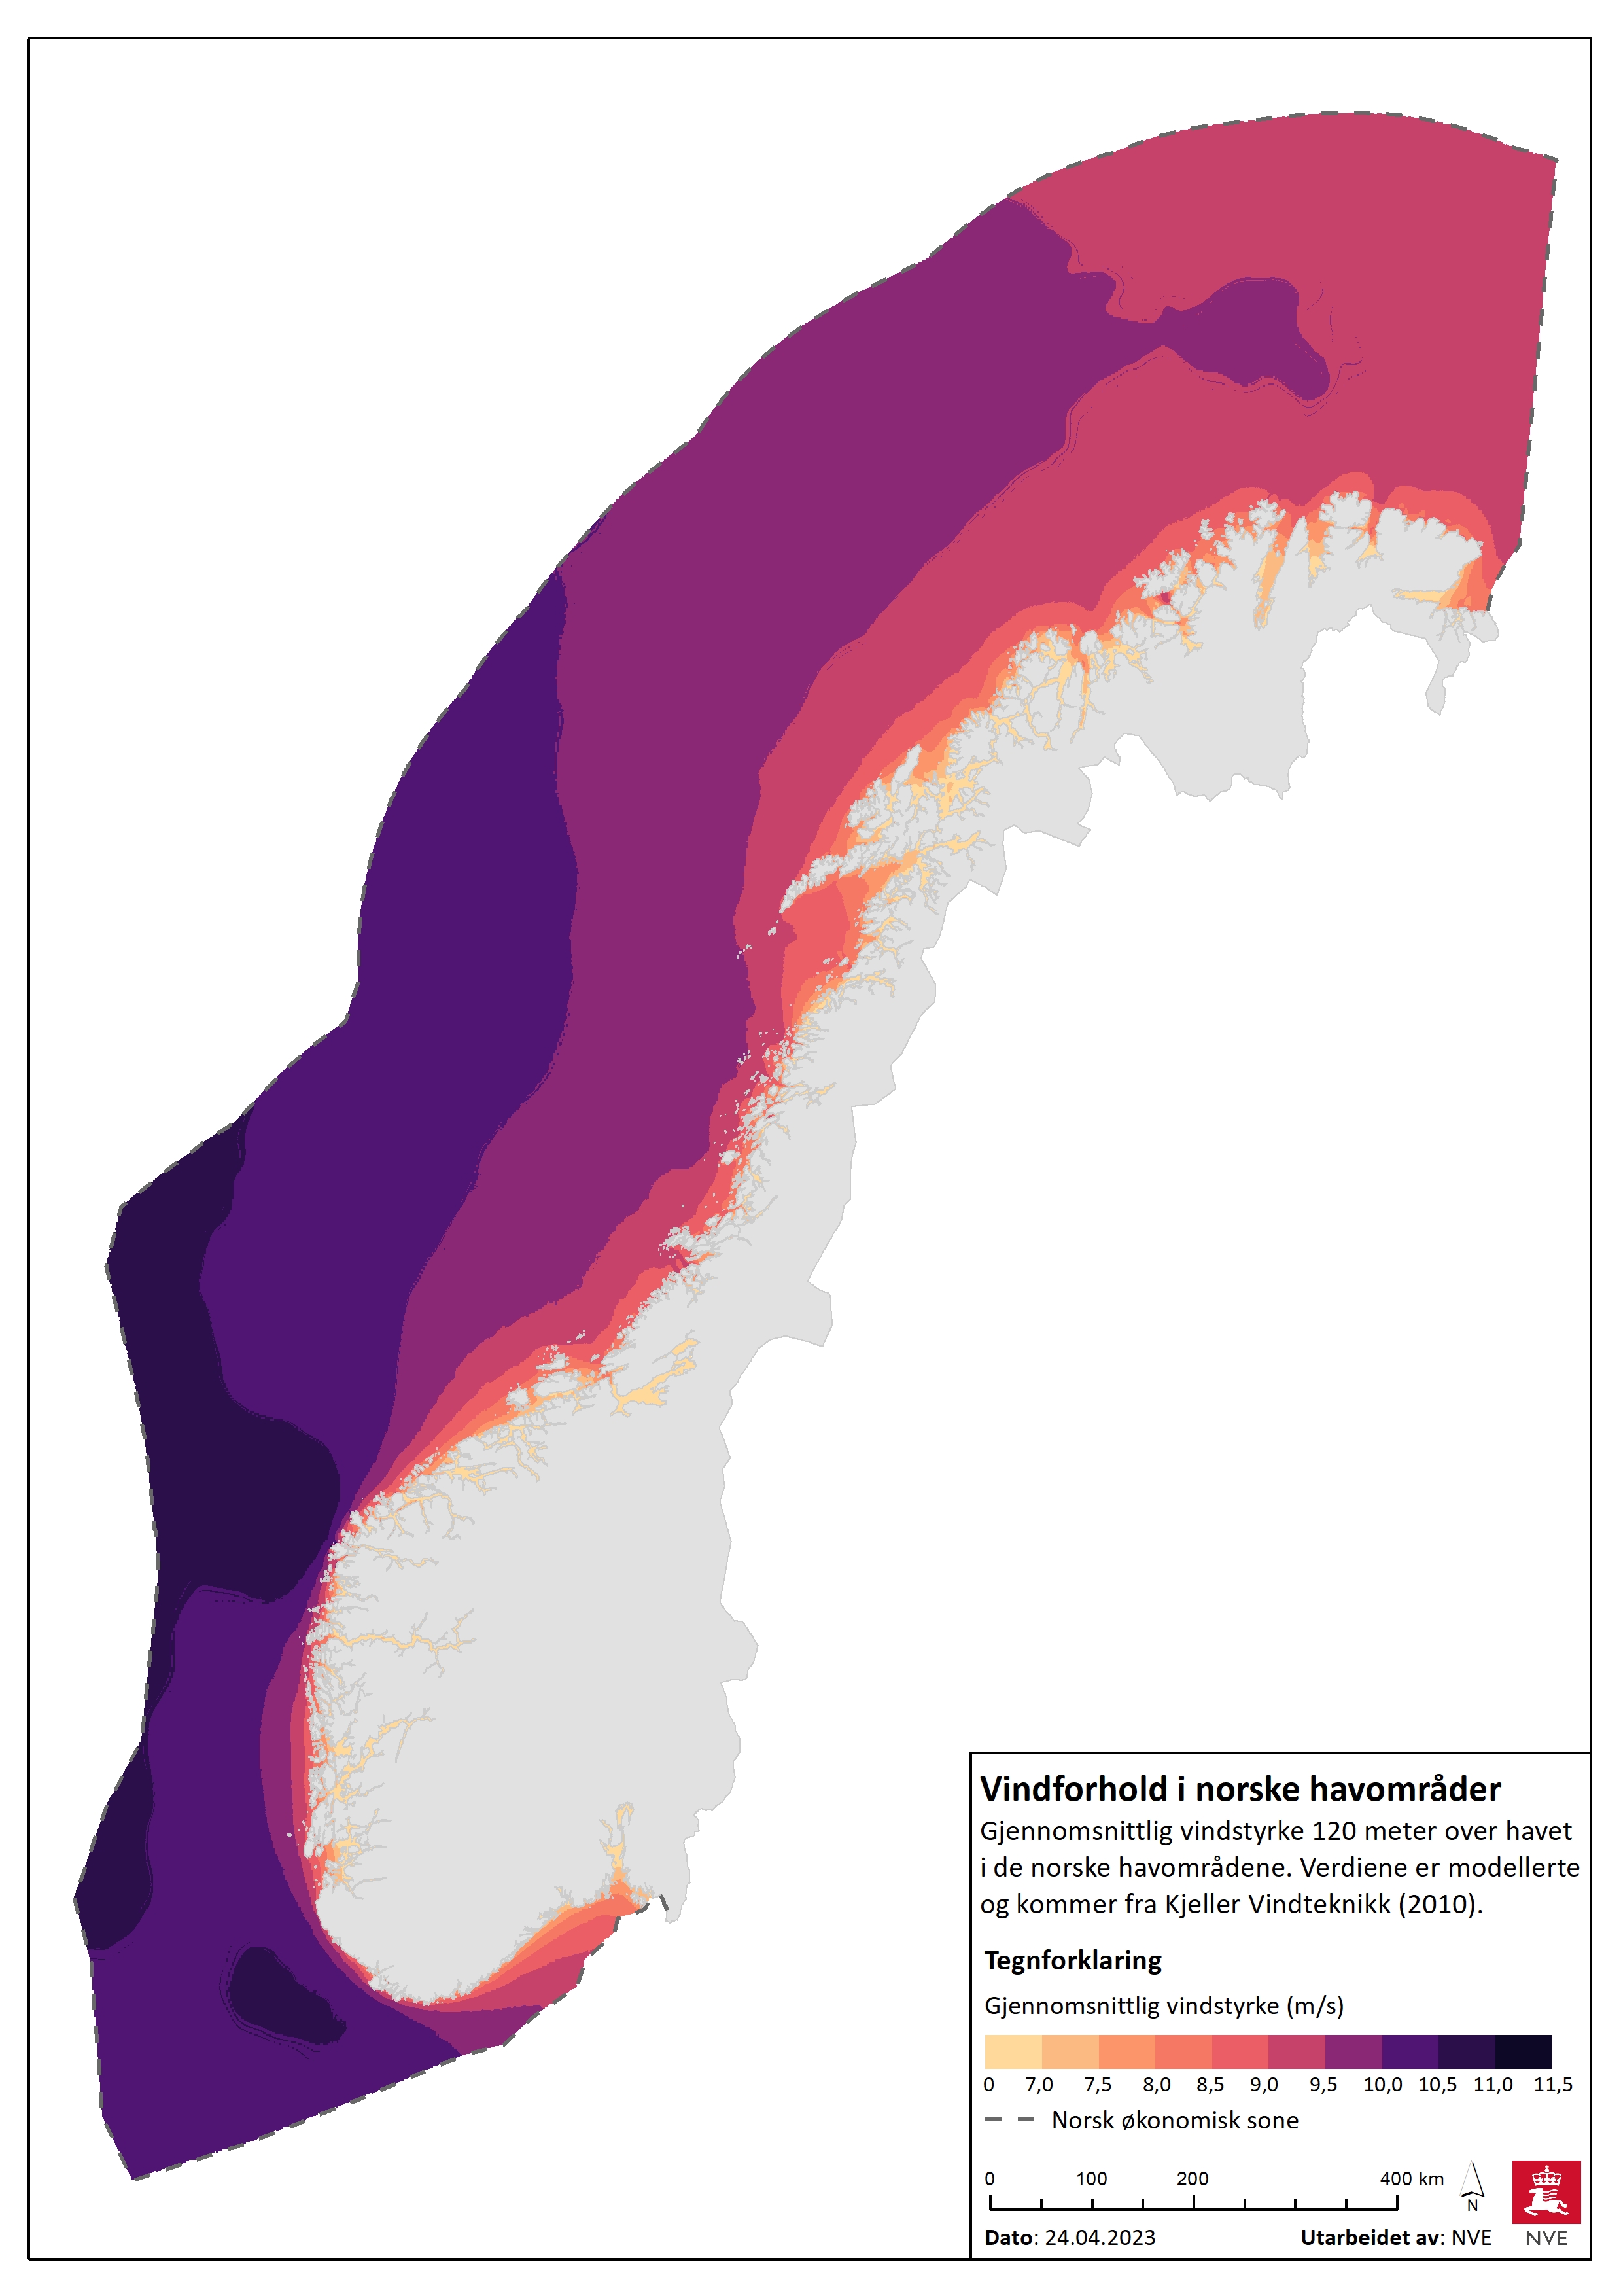 Vindforhold i norske havområder.